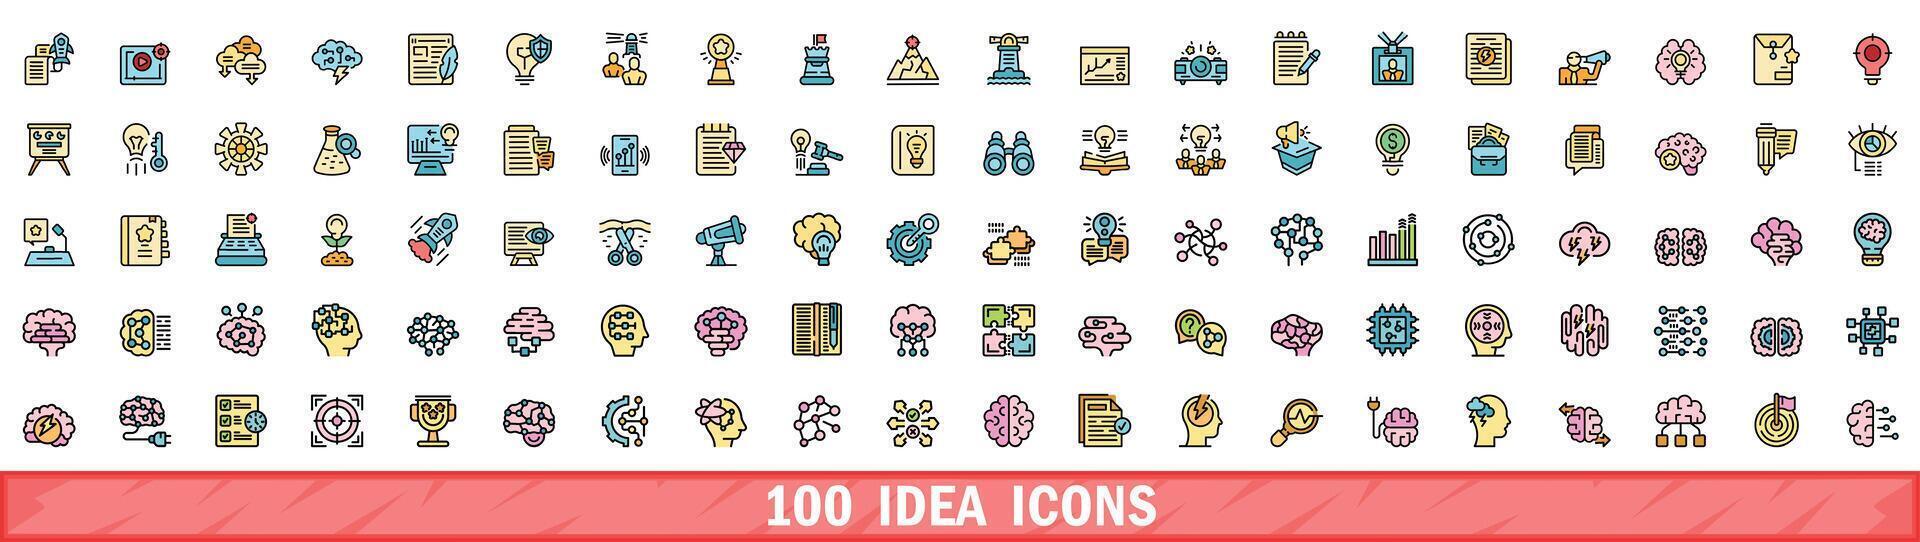 100 idee pictogrammen set, kleur lijn stijl vector